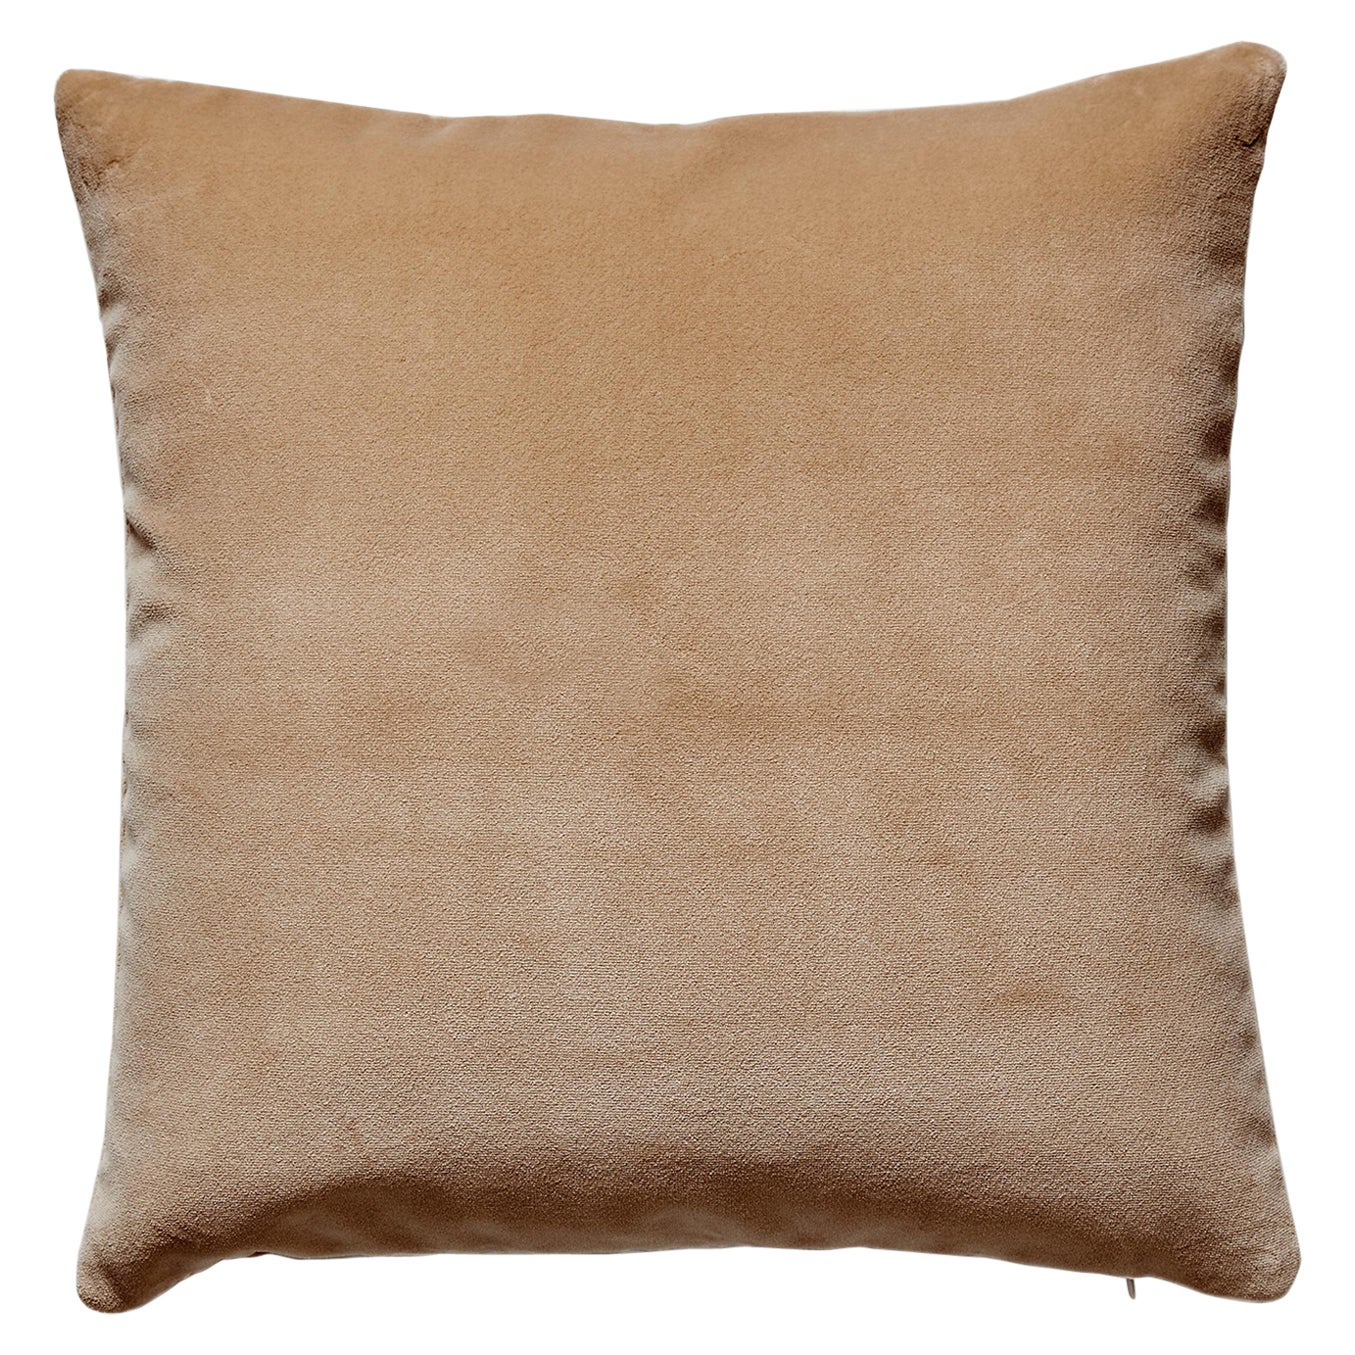 Torino Velvet Pillow